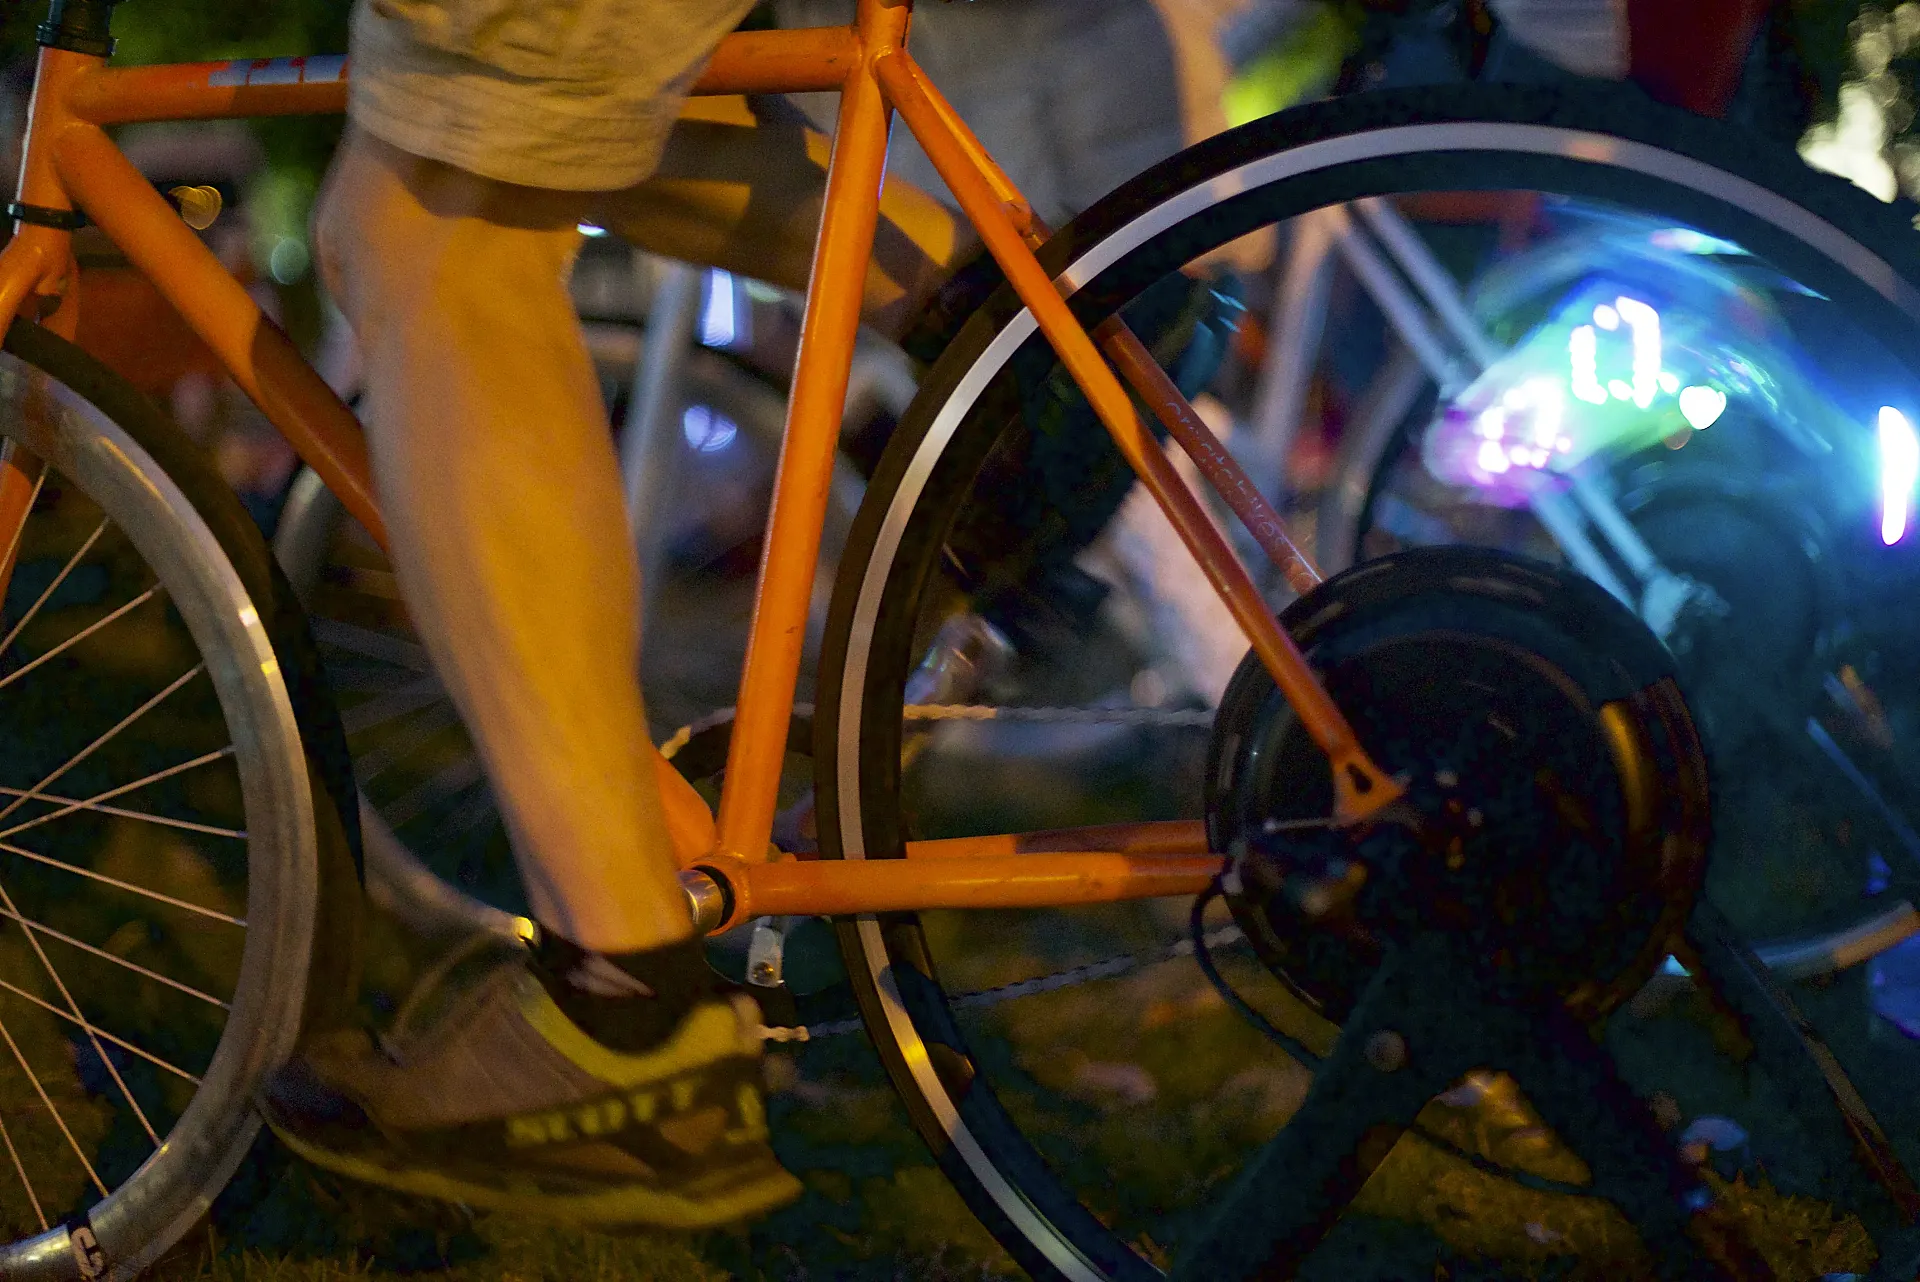 Las actividades culturales en torno a la bicicleta son imprescindibles para generar visibiliad